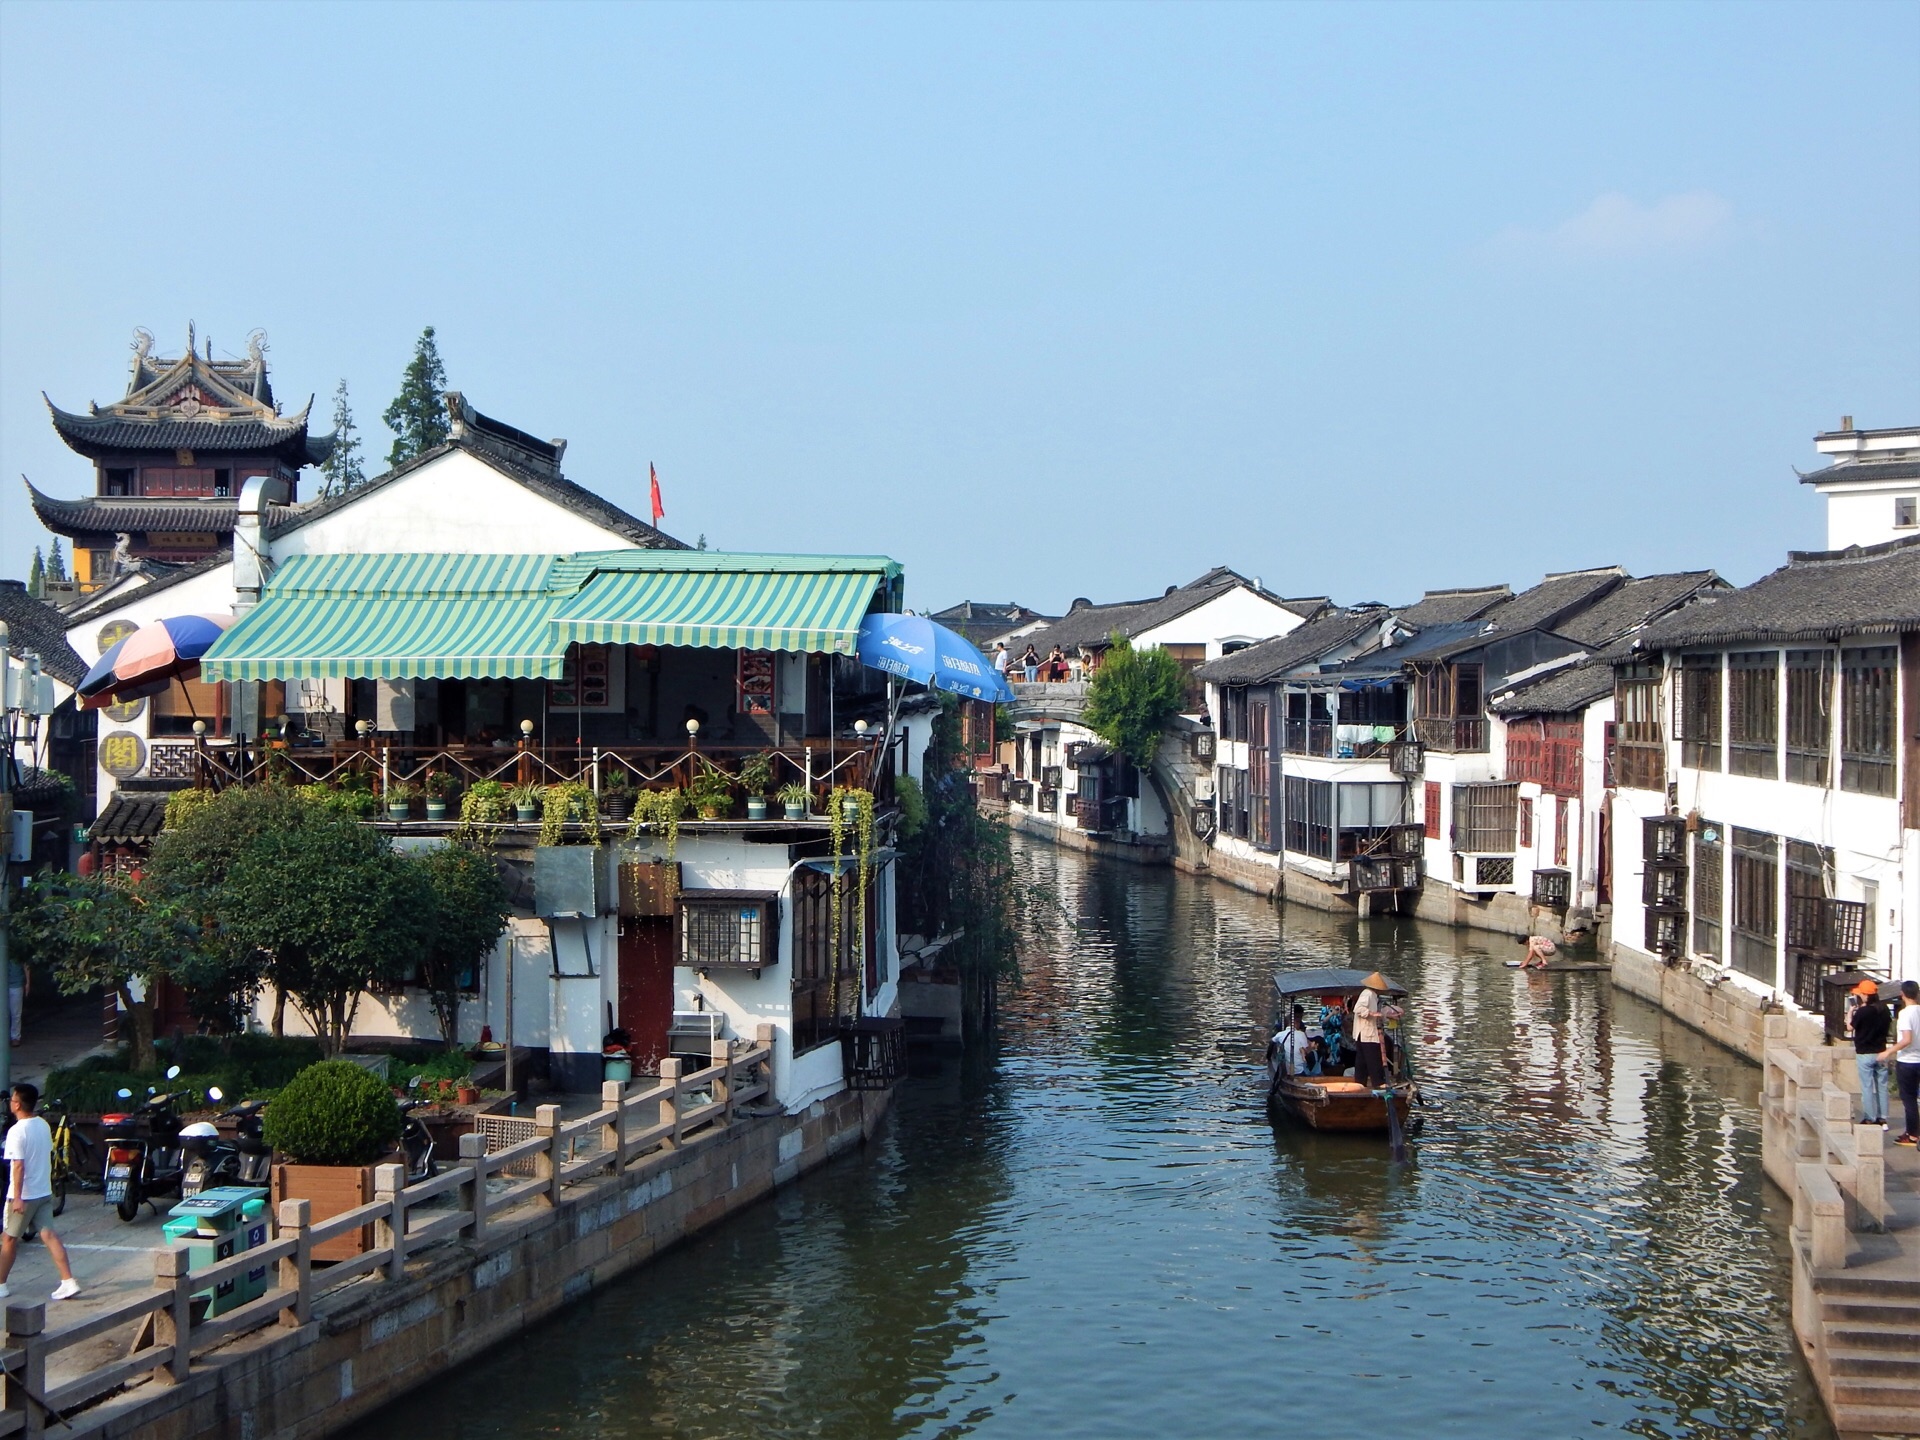 上海四大文化名镇之一,有人说它是上海的威尼斯,在淀山湖之滨